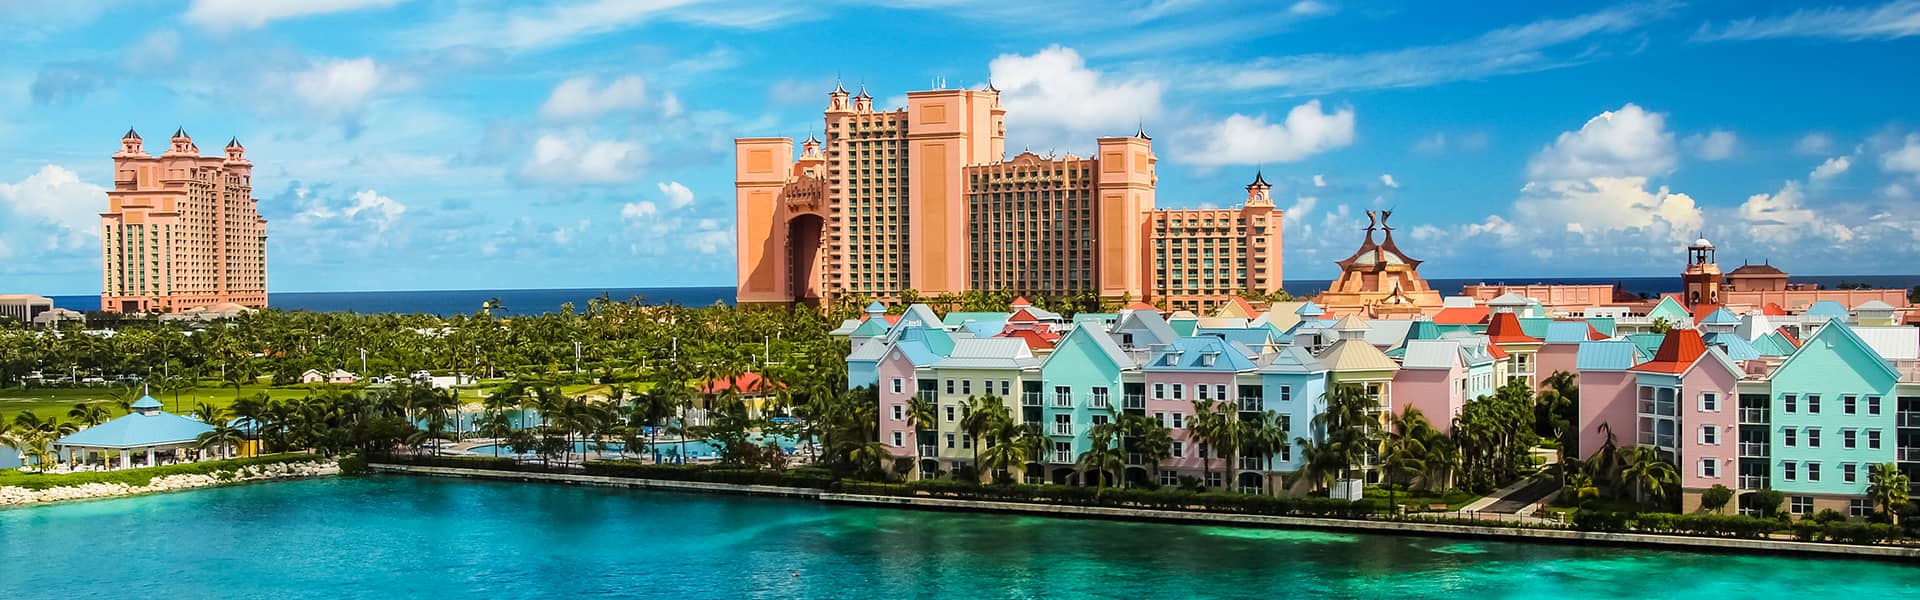 Bahamas: Great Stirrup Cay, Key West und Nassau